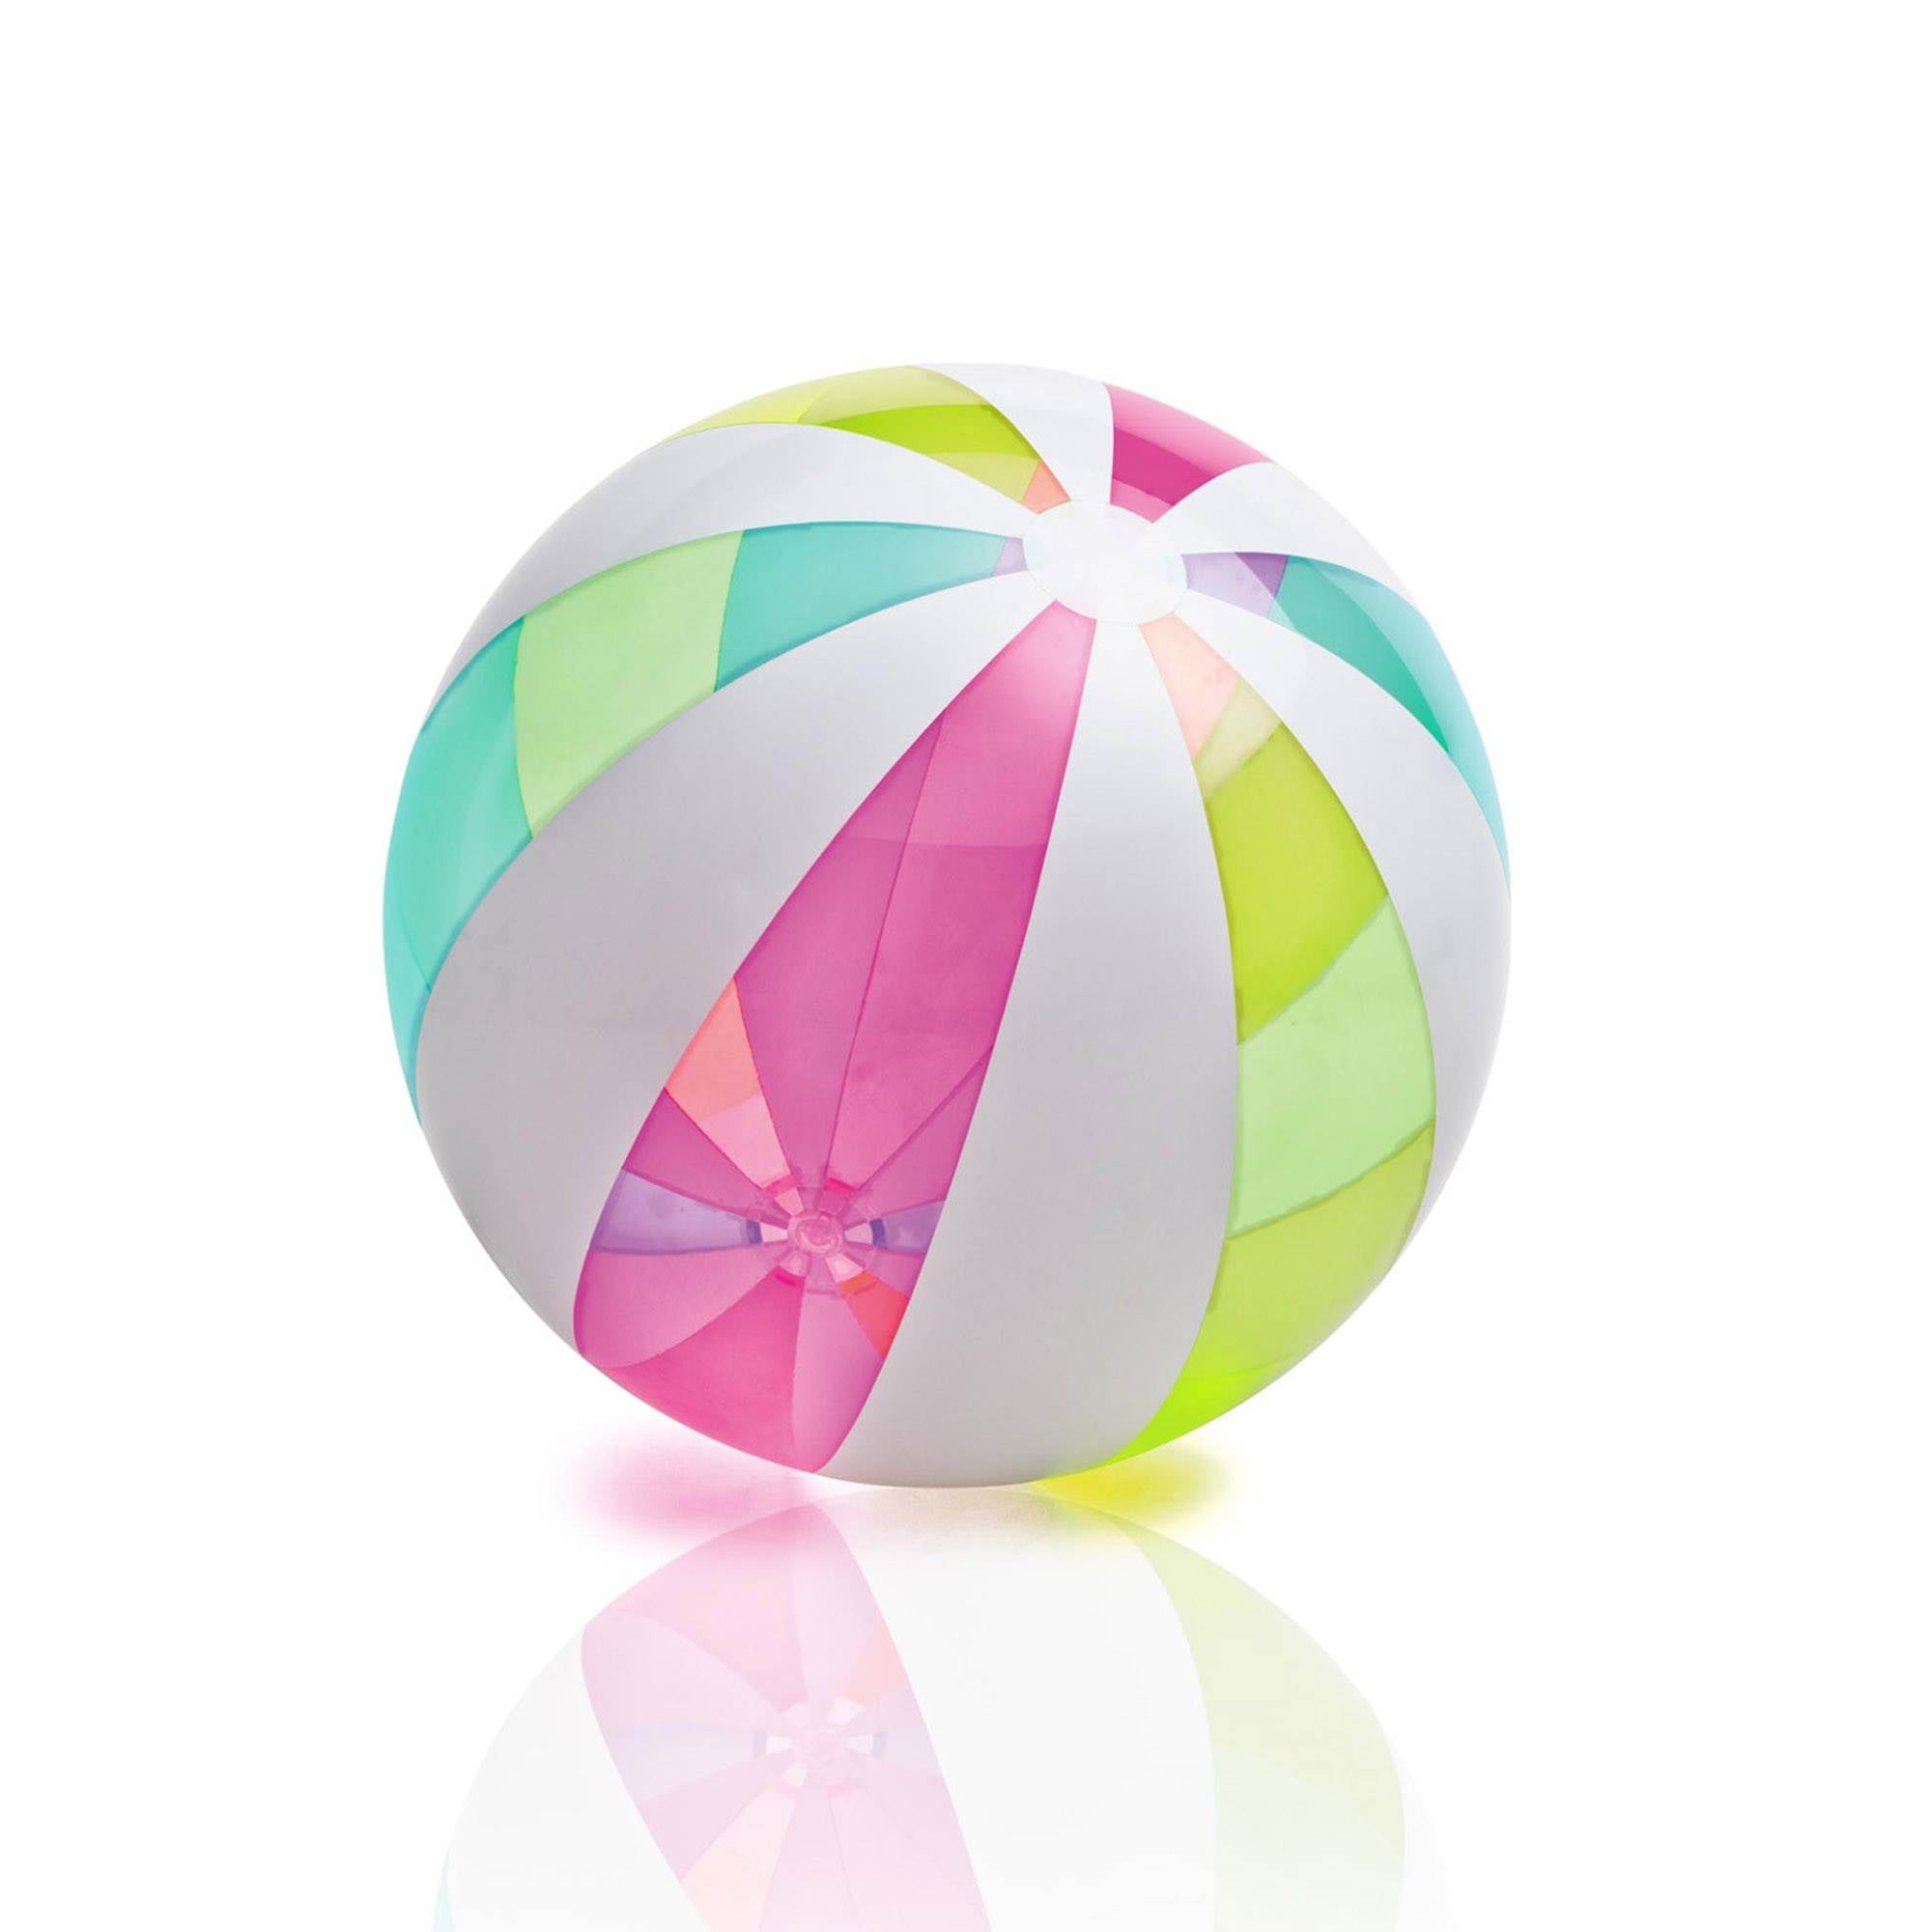 Intex Glossy Panel Ball (ages 3+) at